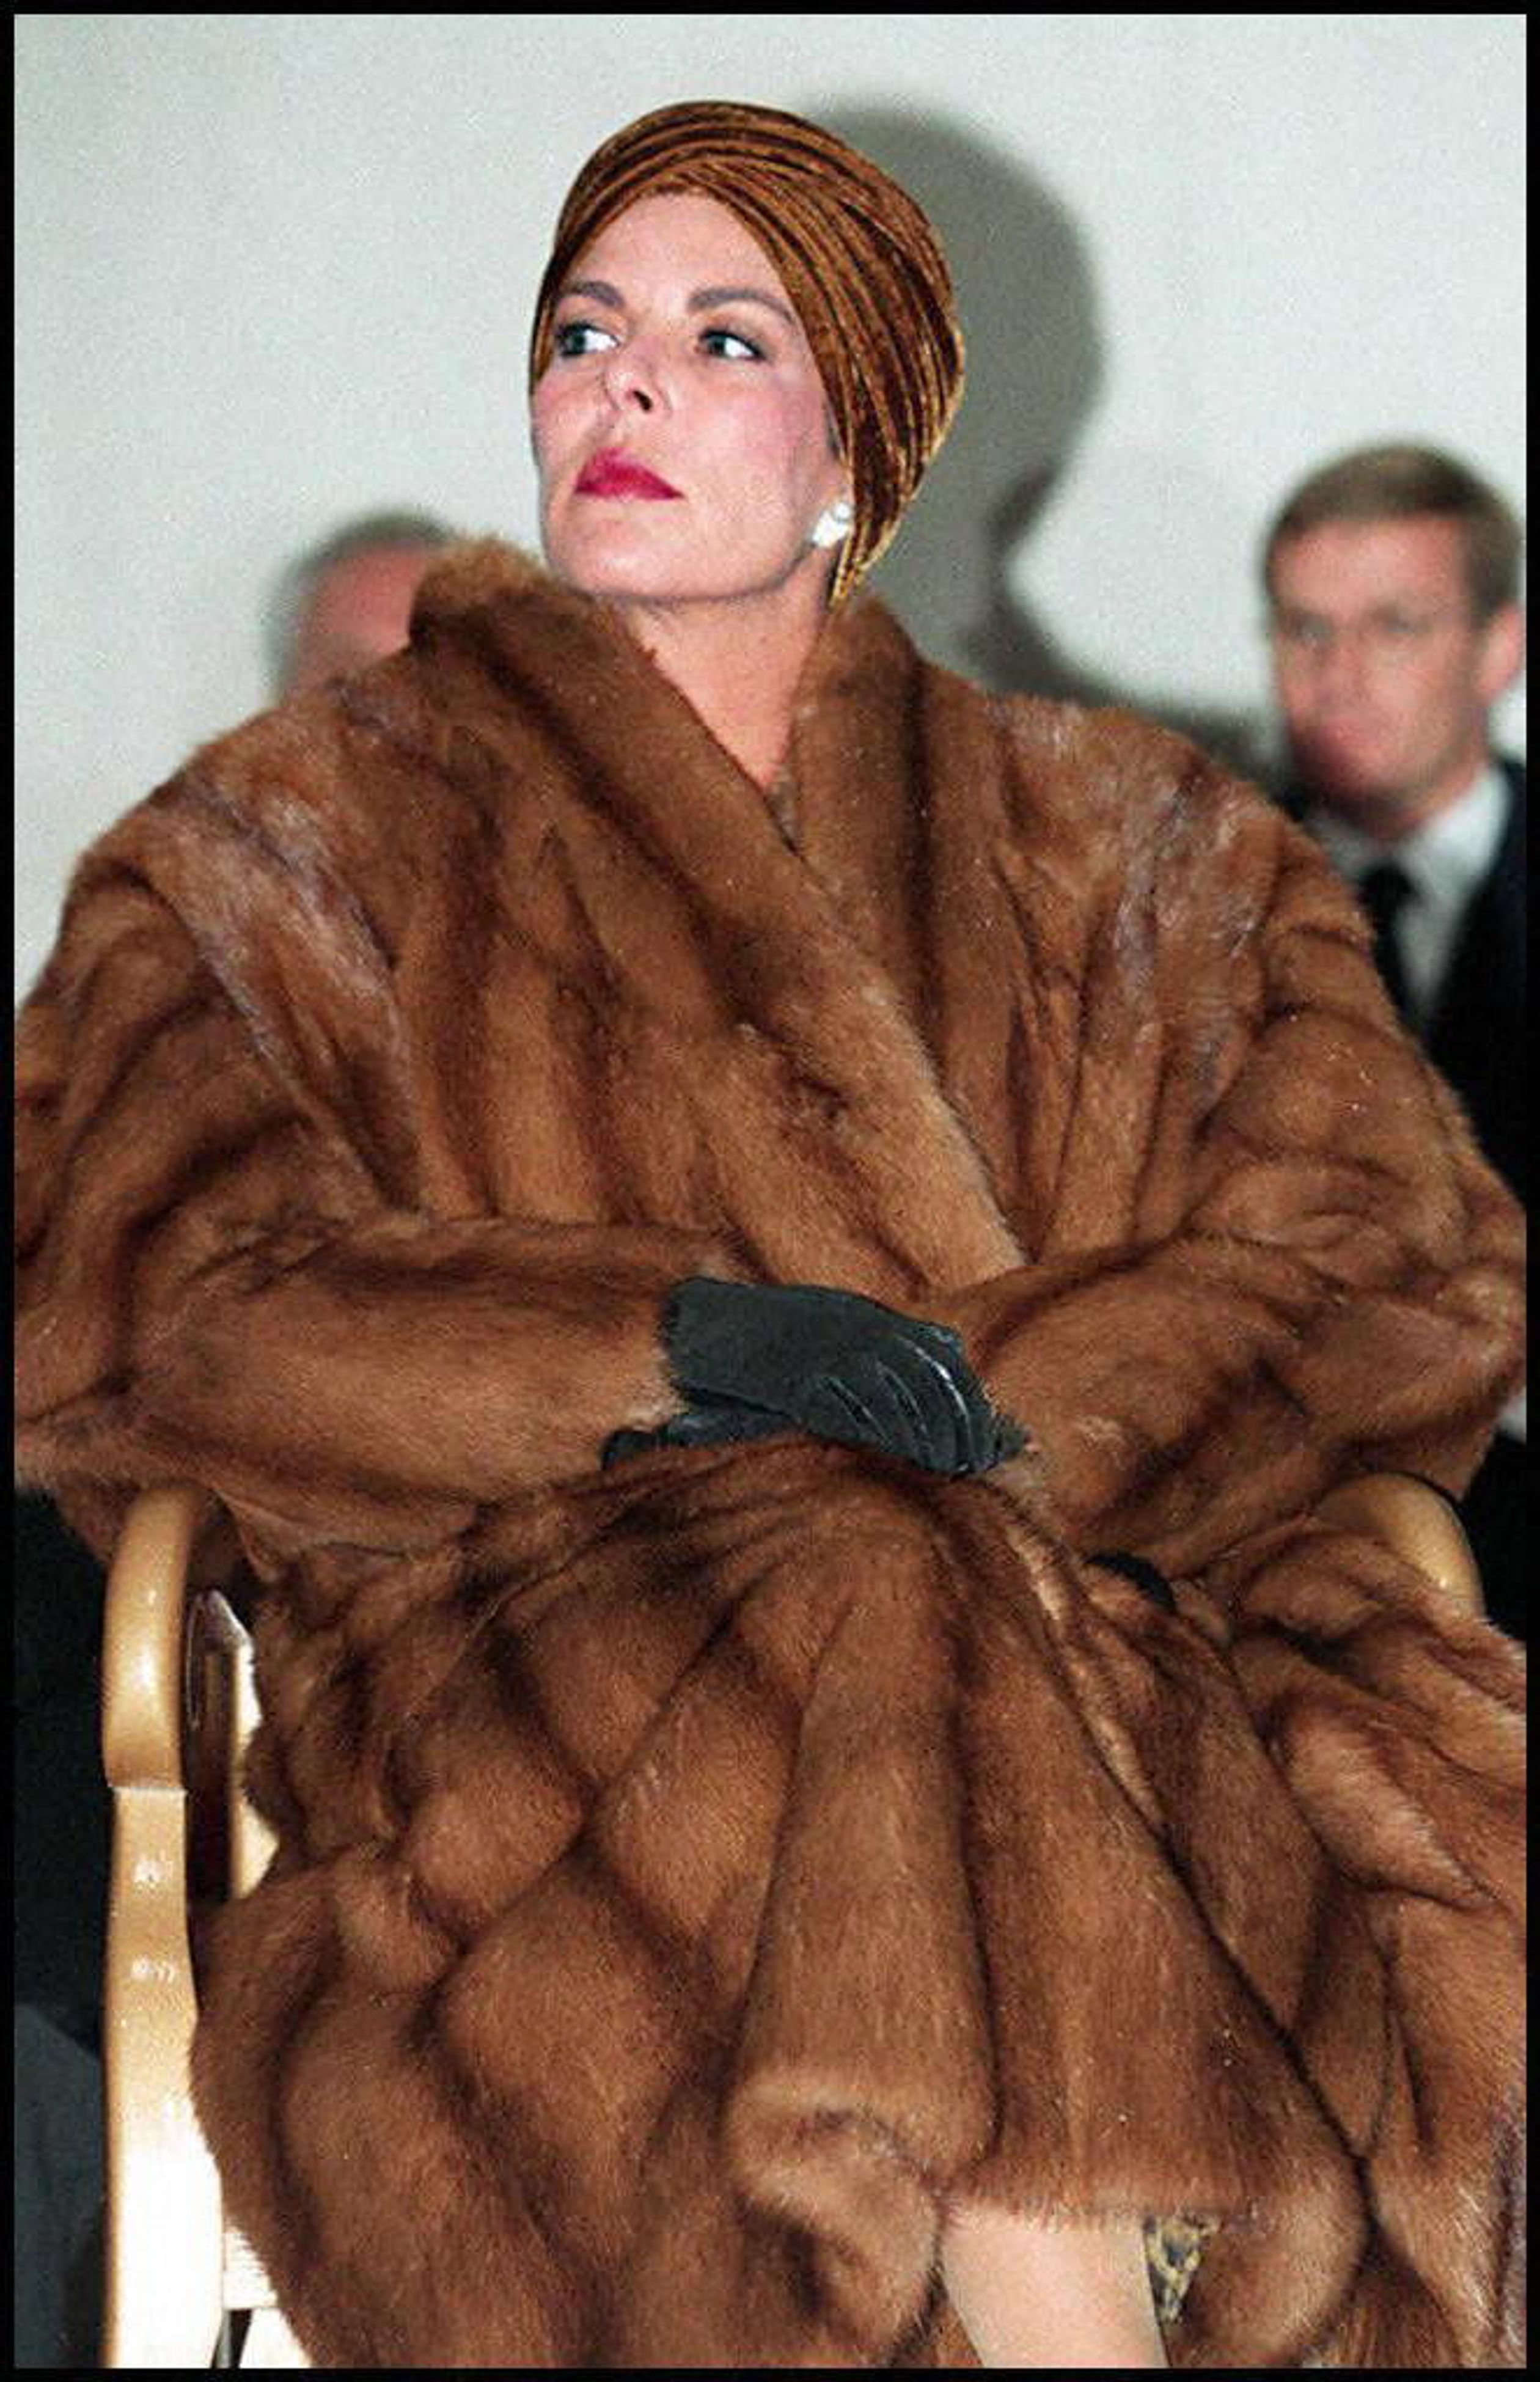 In 1997 zien we Caroline van top tot teen in bont. Deze outfit past goed bij het glamoureuze imago van de prinses.